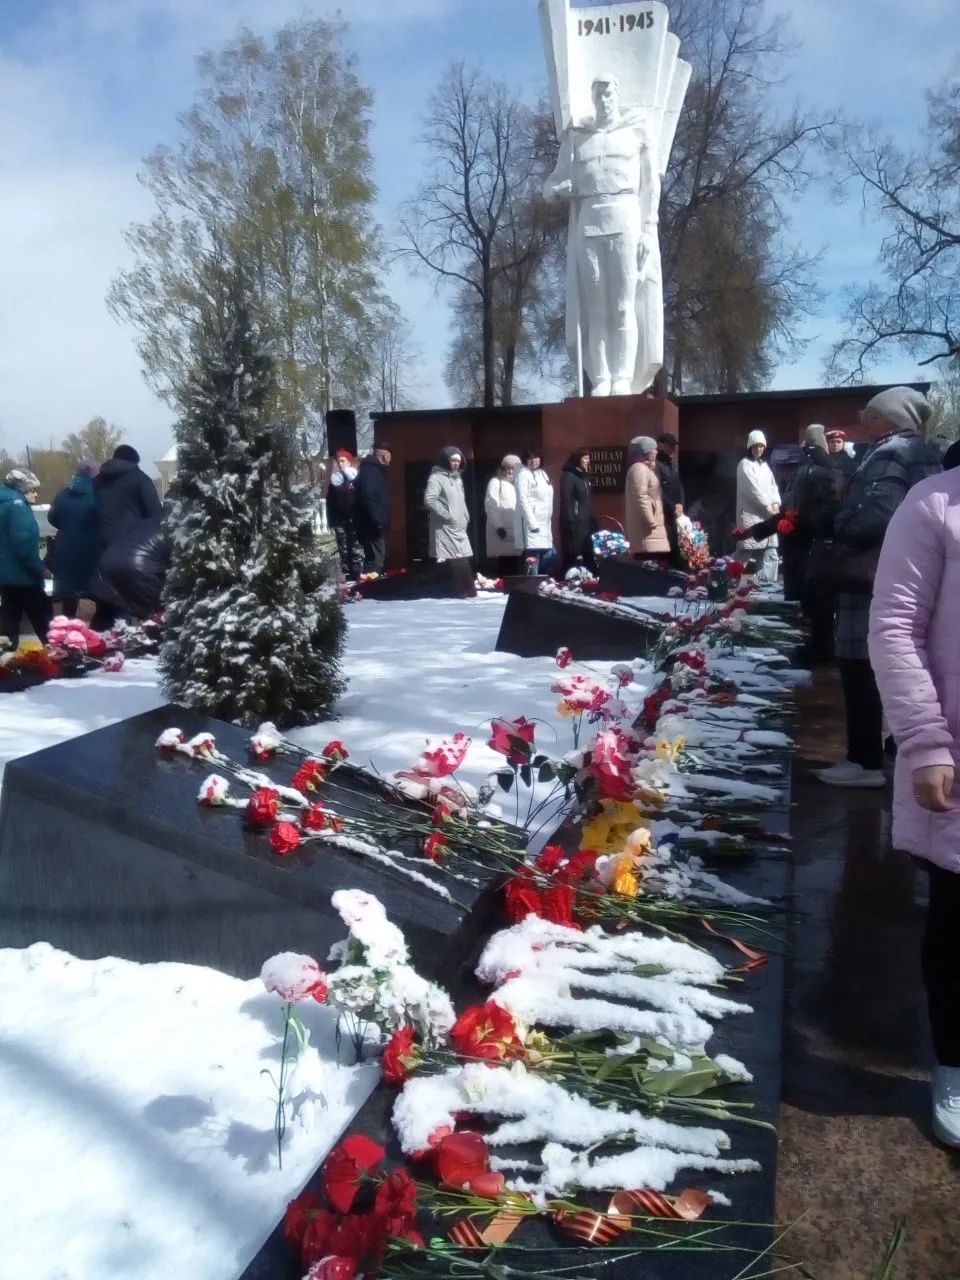 День Победы в Костромской области: как это было. Фоторепортаж